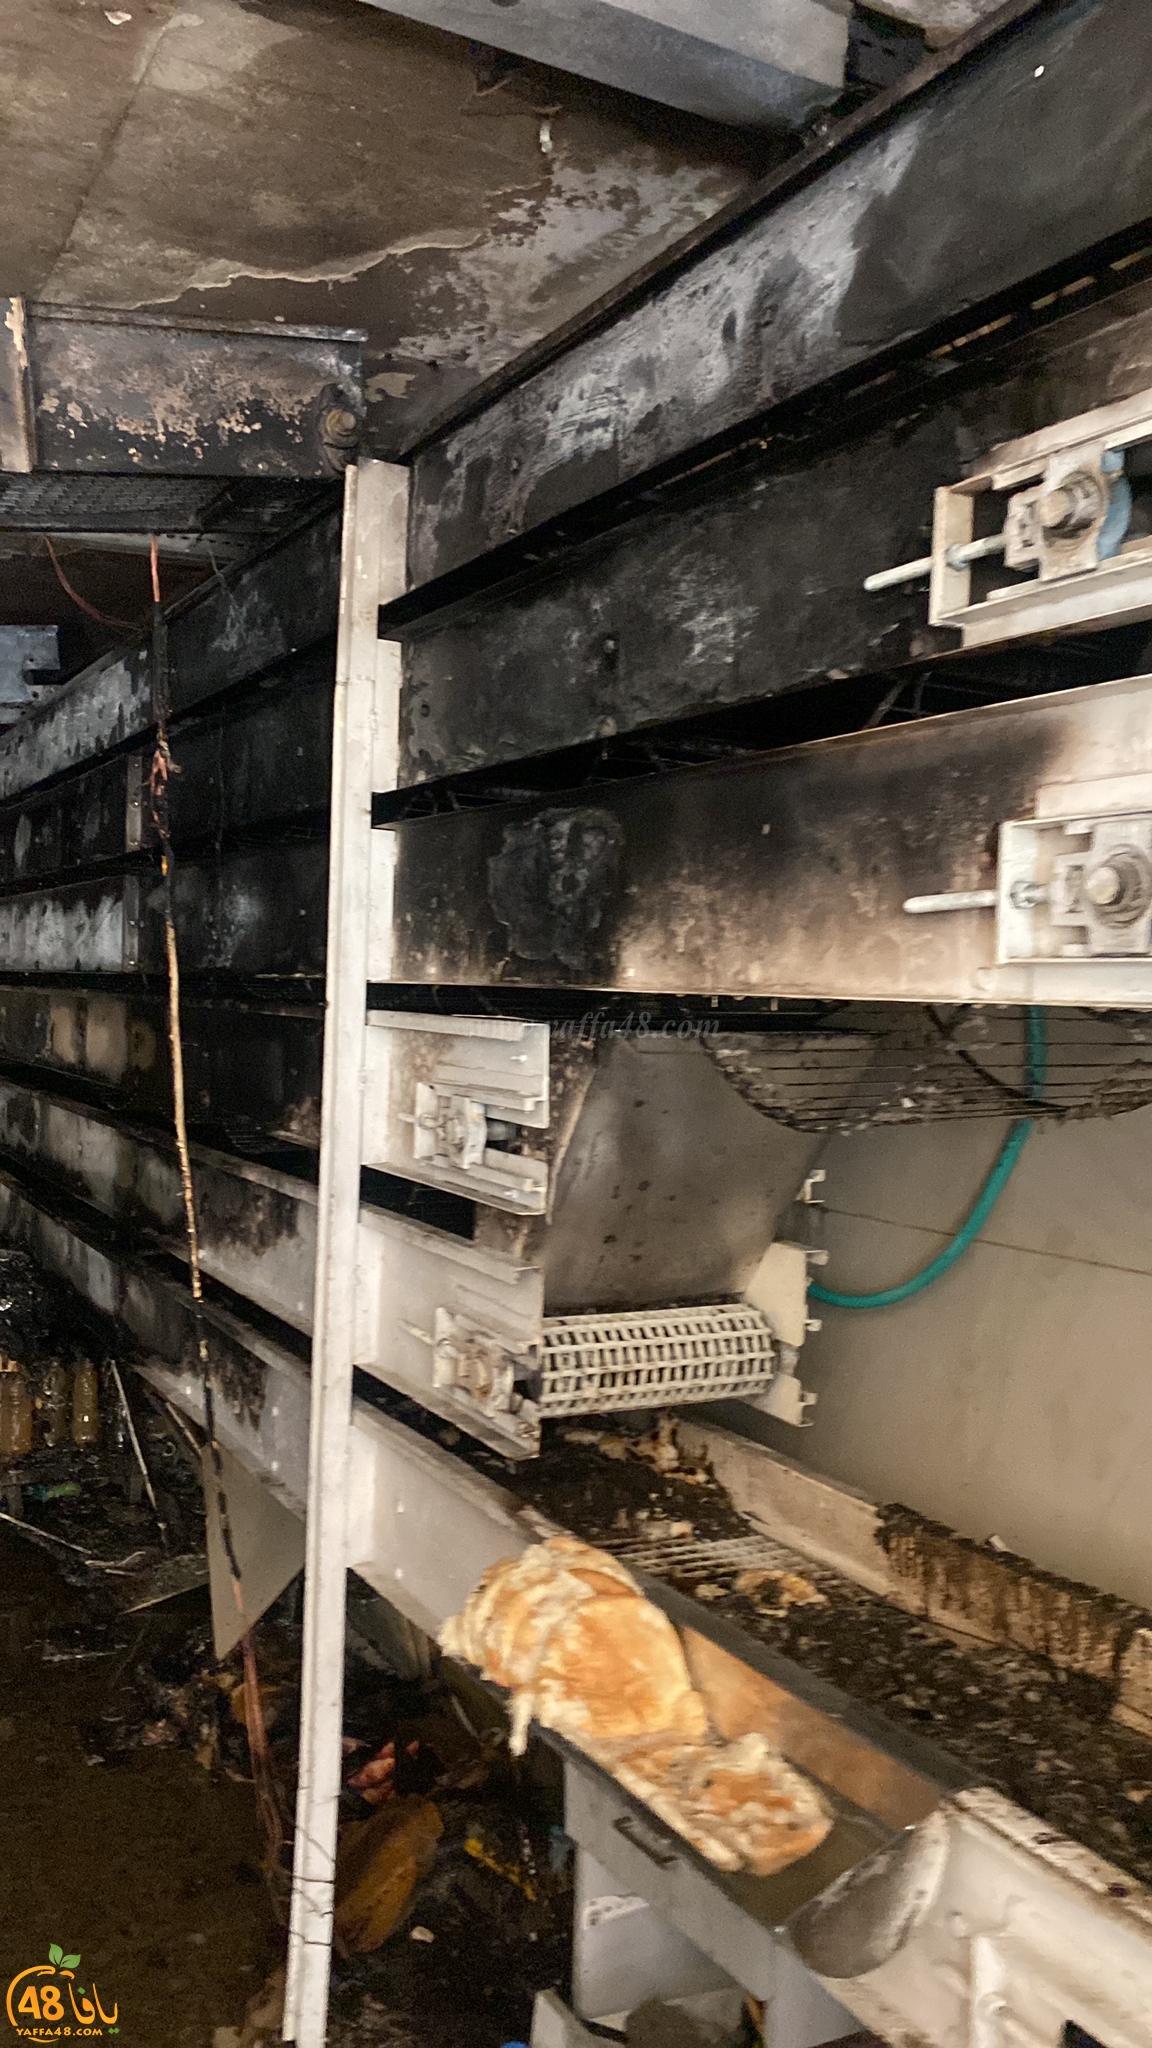  يافا: حريق يُخلف أضراراً جسيمة داخل أحد المخابز 